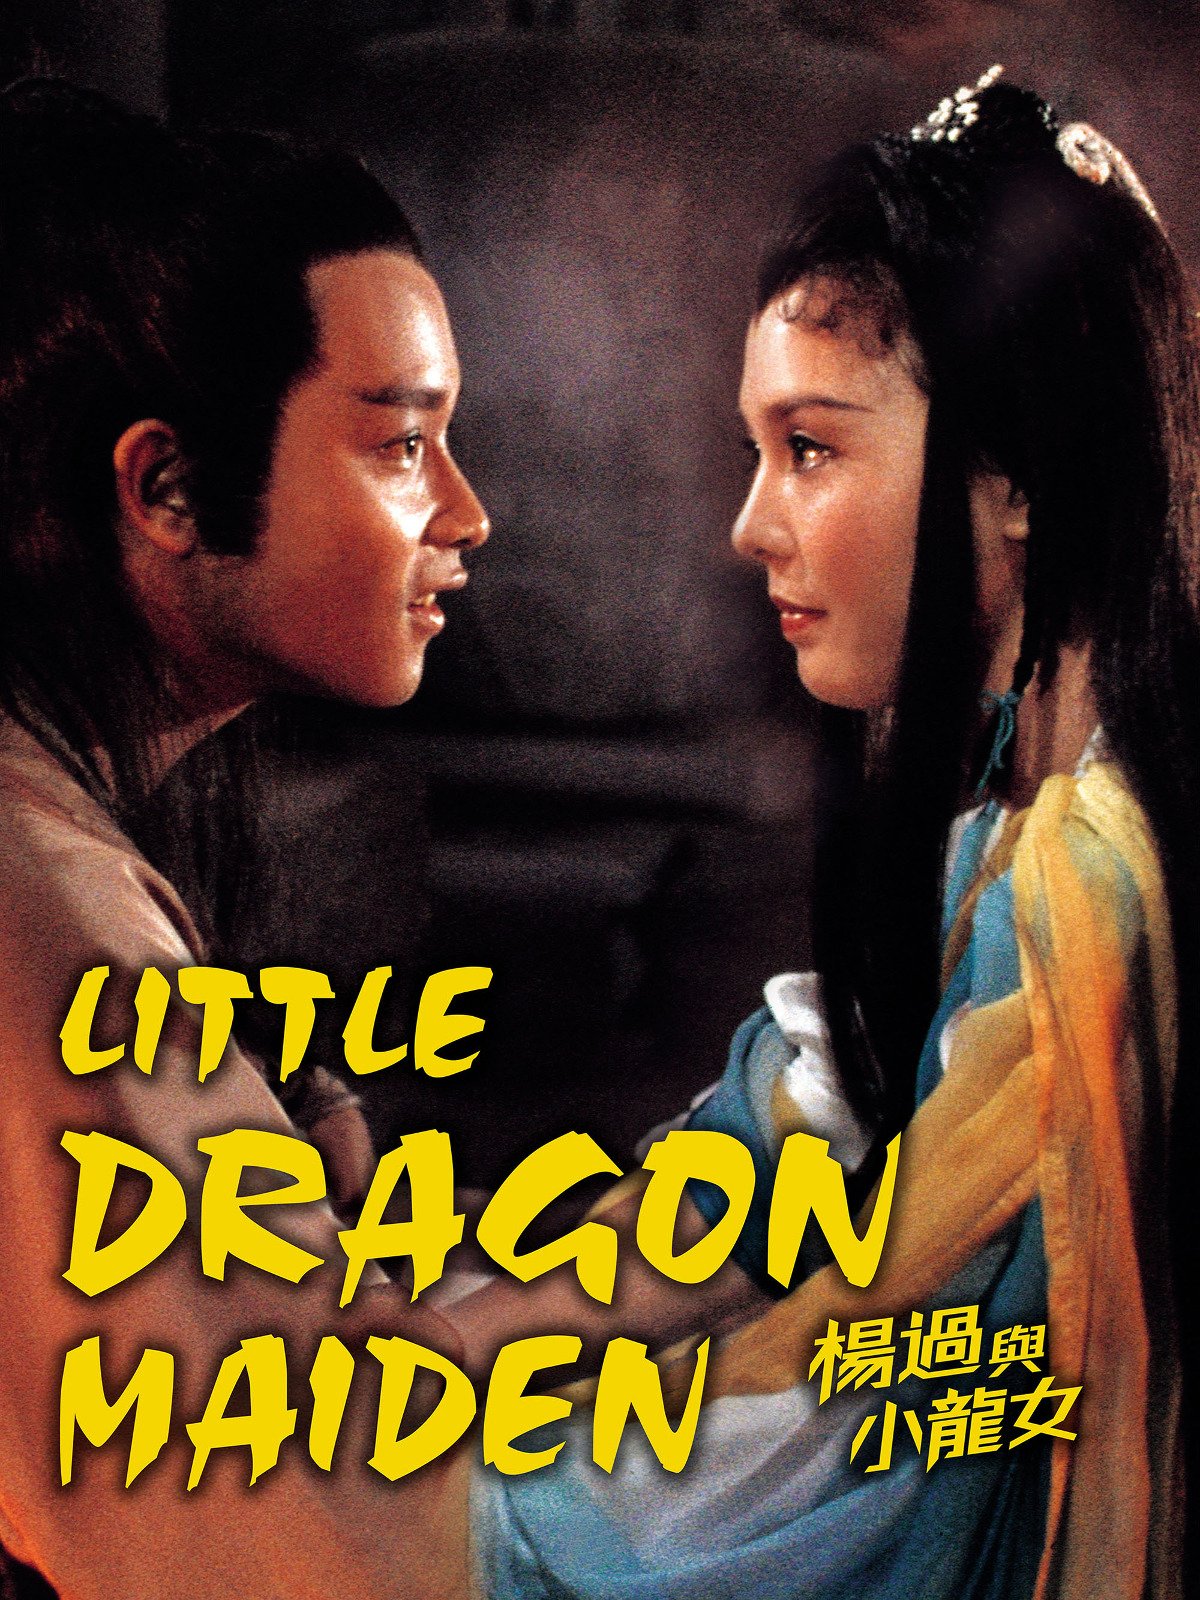 Post image: Little Dragon Maiden (1983) มังกรหยก เอี๊ยะก๋วยกับเซียวเล่งนึ่ง